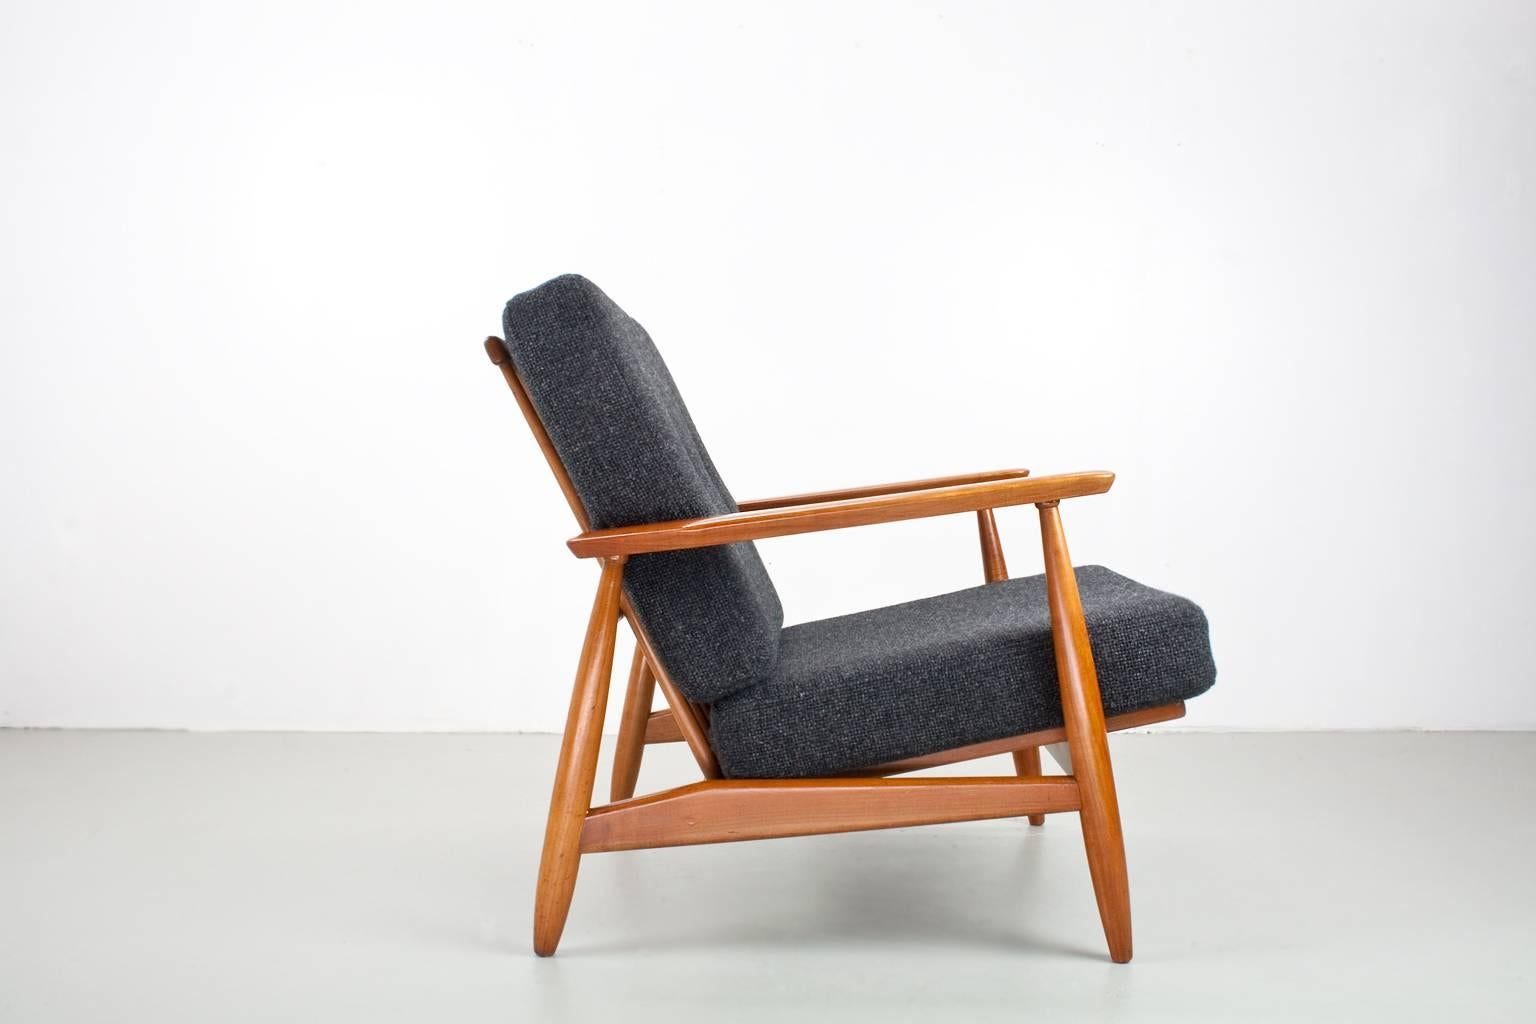 Oiled Danish Lounge Set in Elm and New Upholstered, 1960s in Manner of Finn Juhl